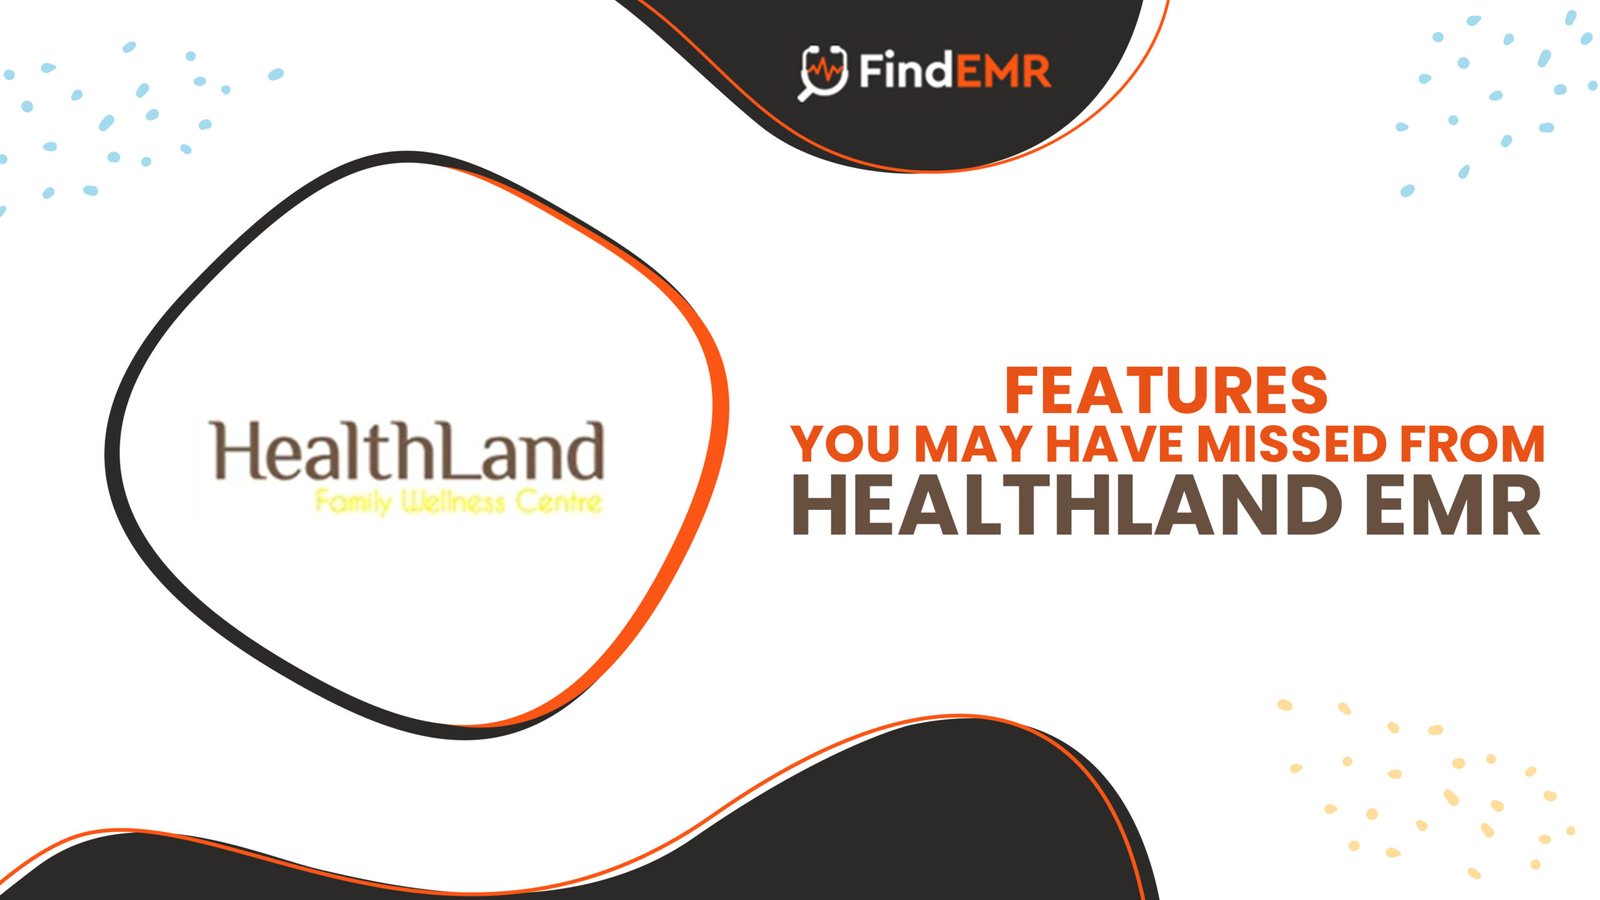 Healthland EMR